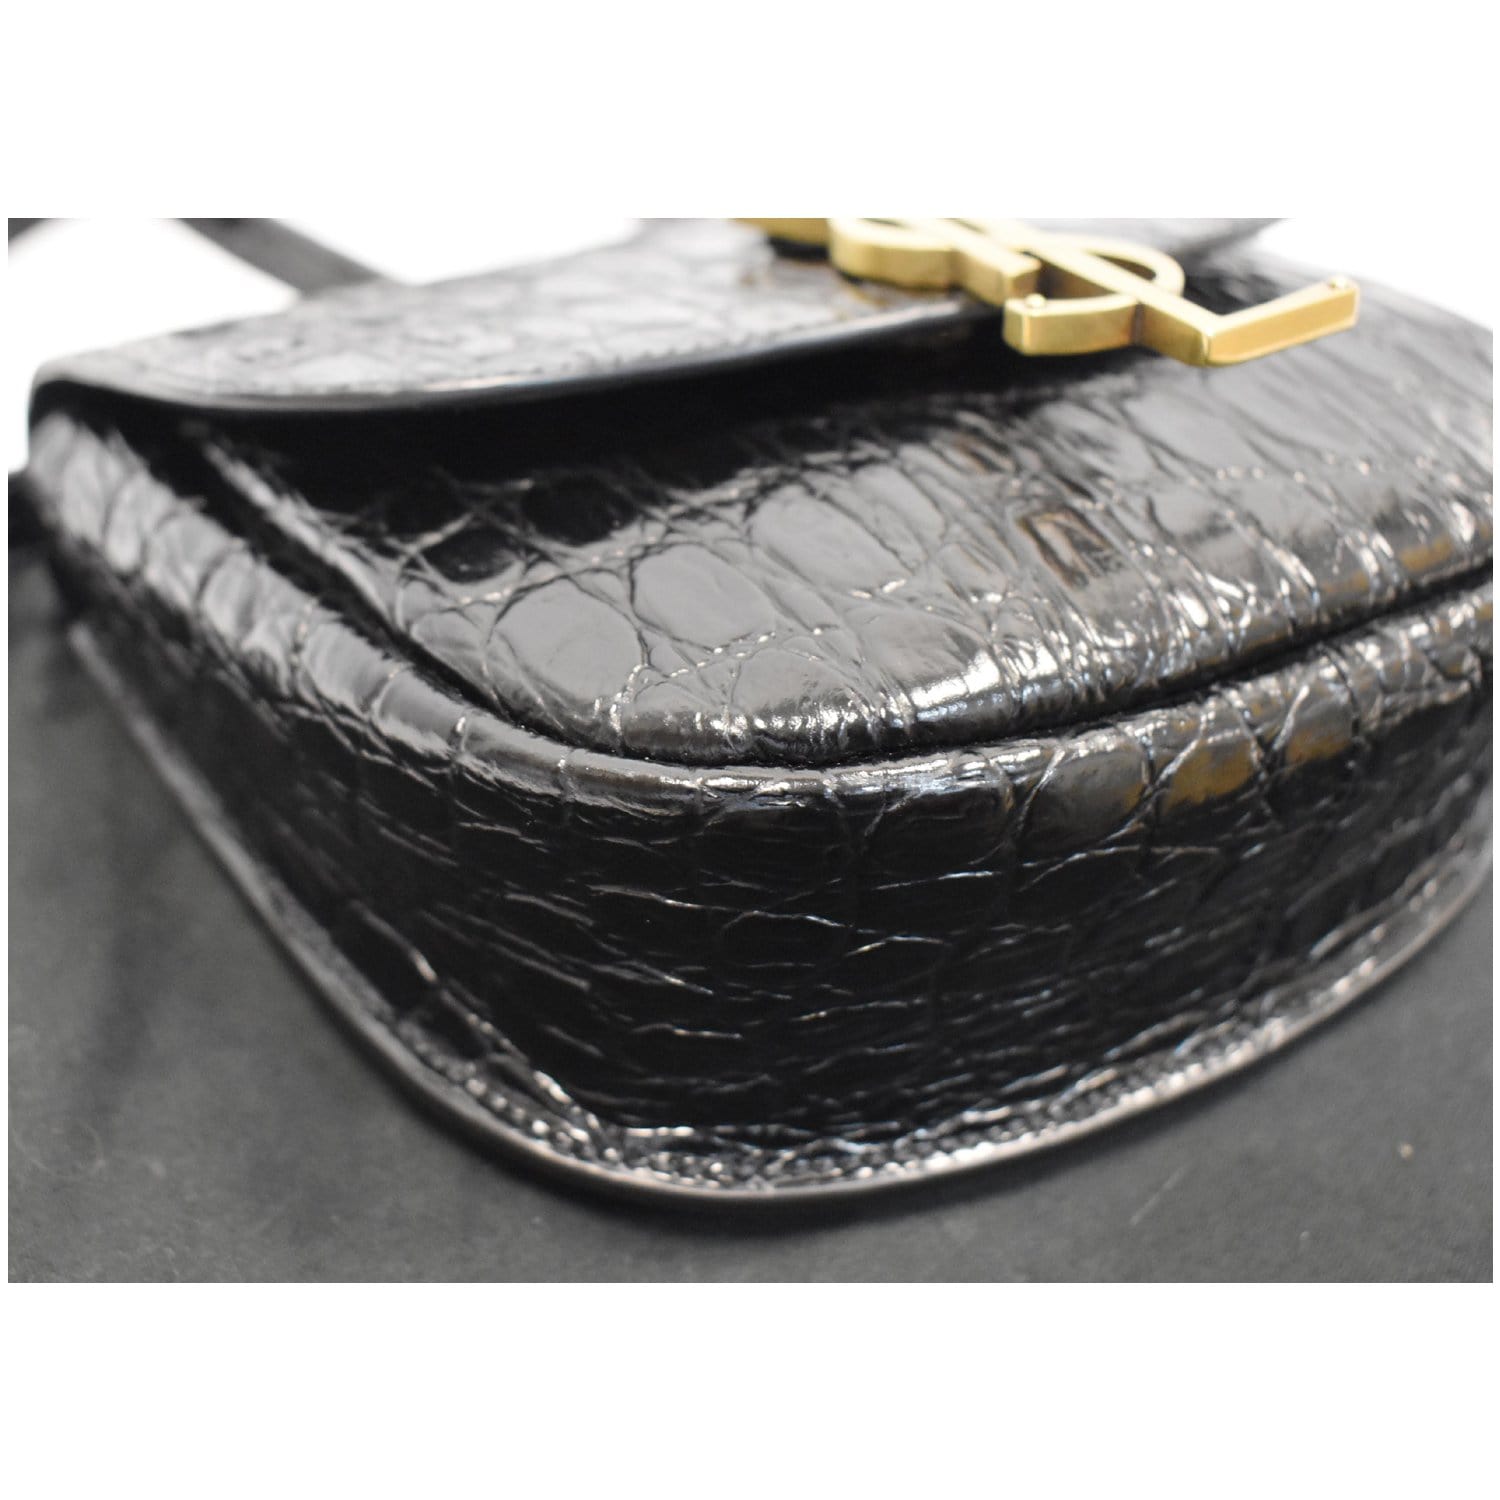 YVES SAINT LAURENT Kaia Small Crocodile Embossed Leather Satchel Bag B